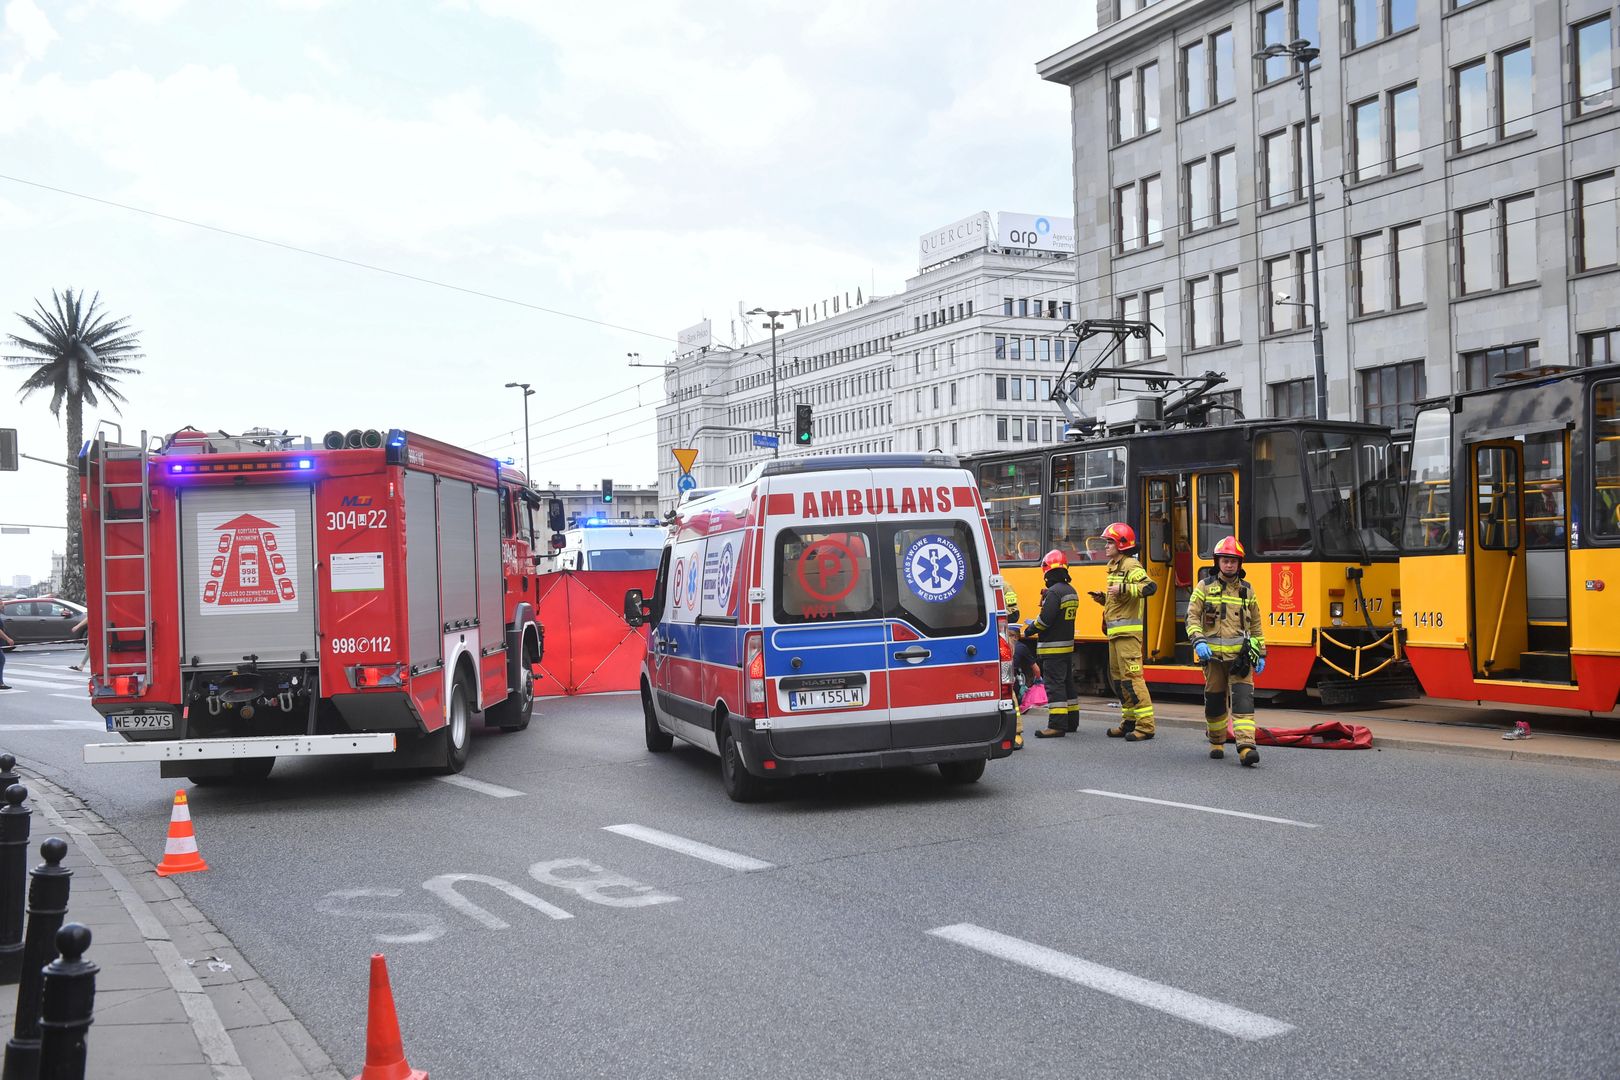 Koszmarny wypadek w centrum Warszawy. Tramwaj potrącił kobietę